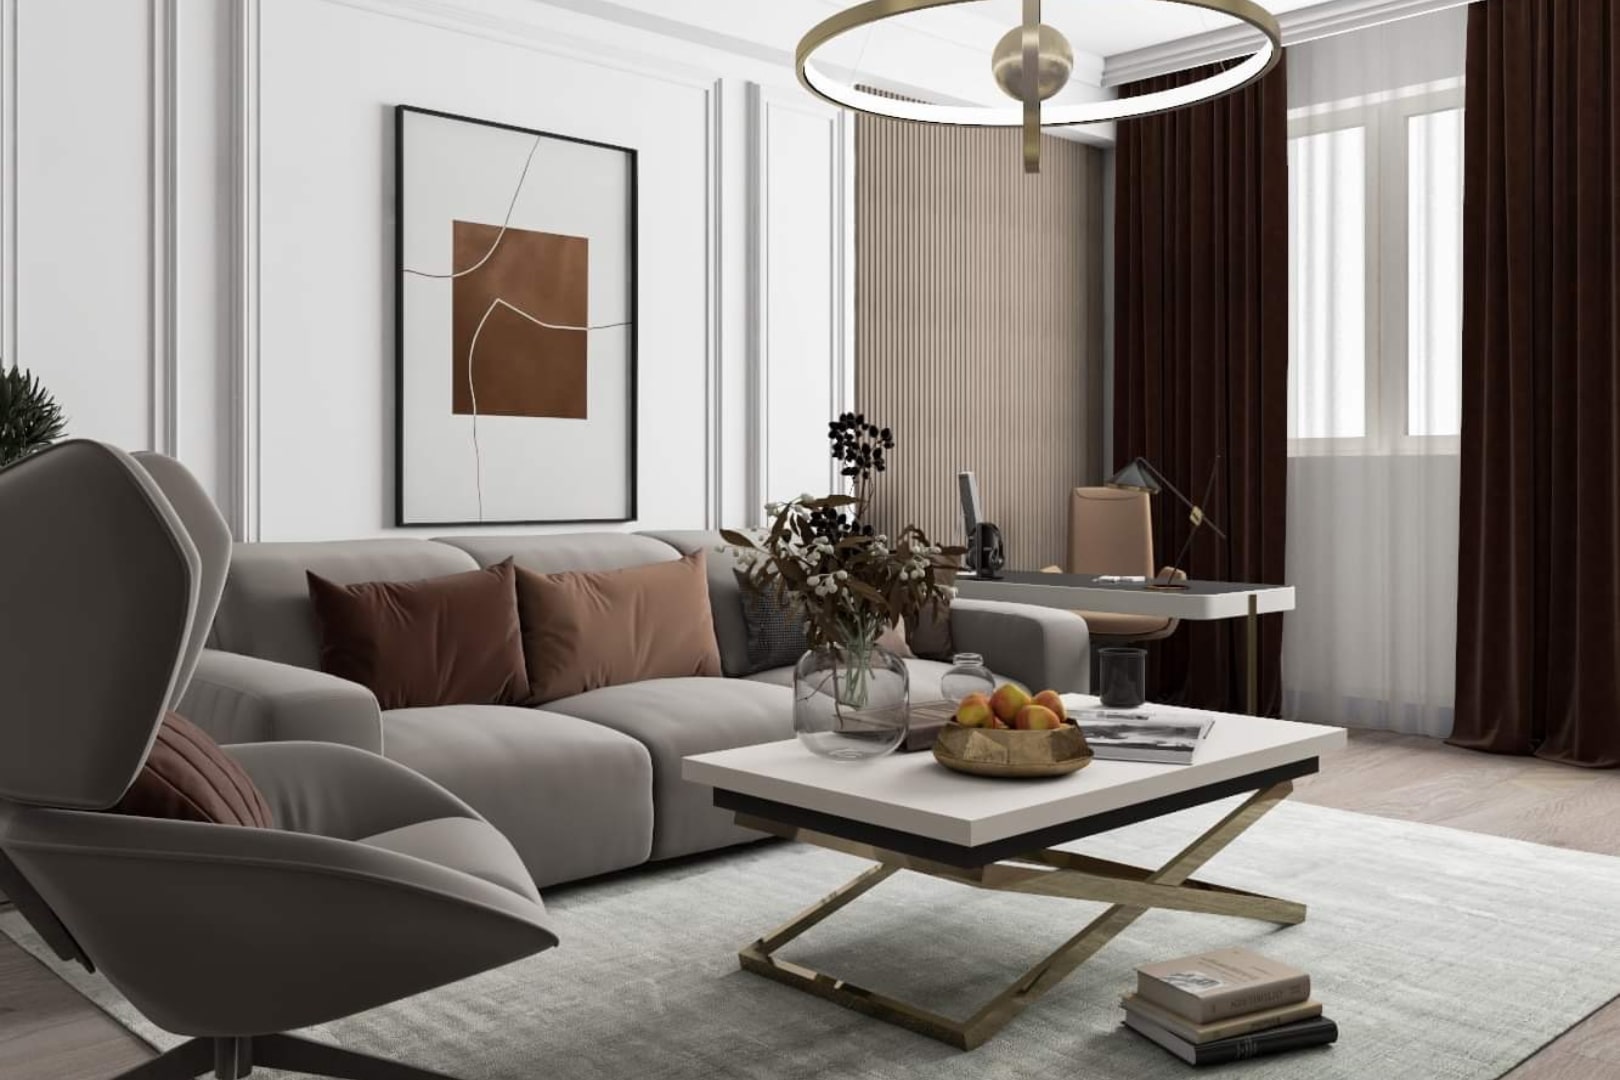 Design interior pentru un living modern cu detalii clasice.